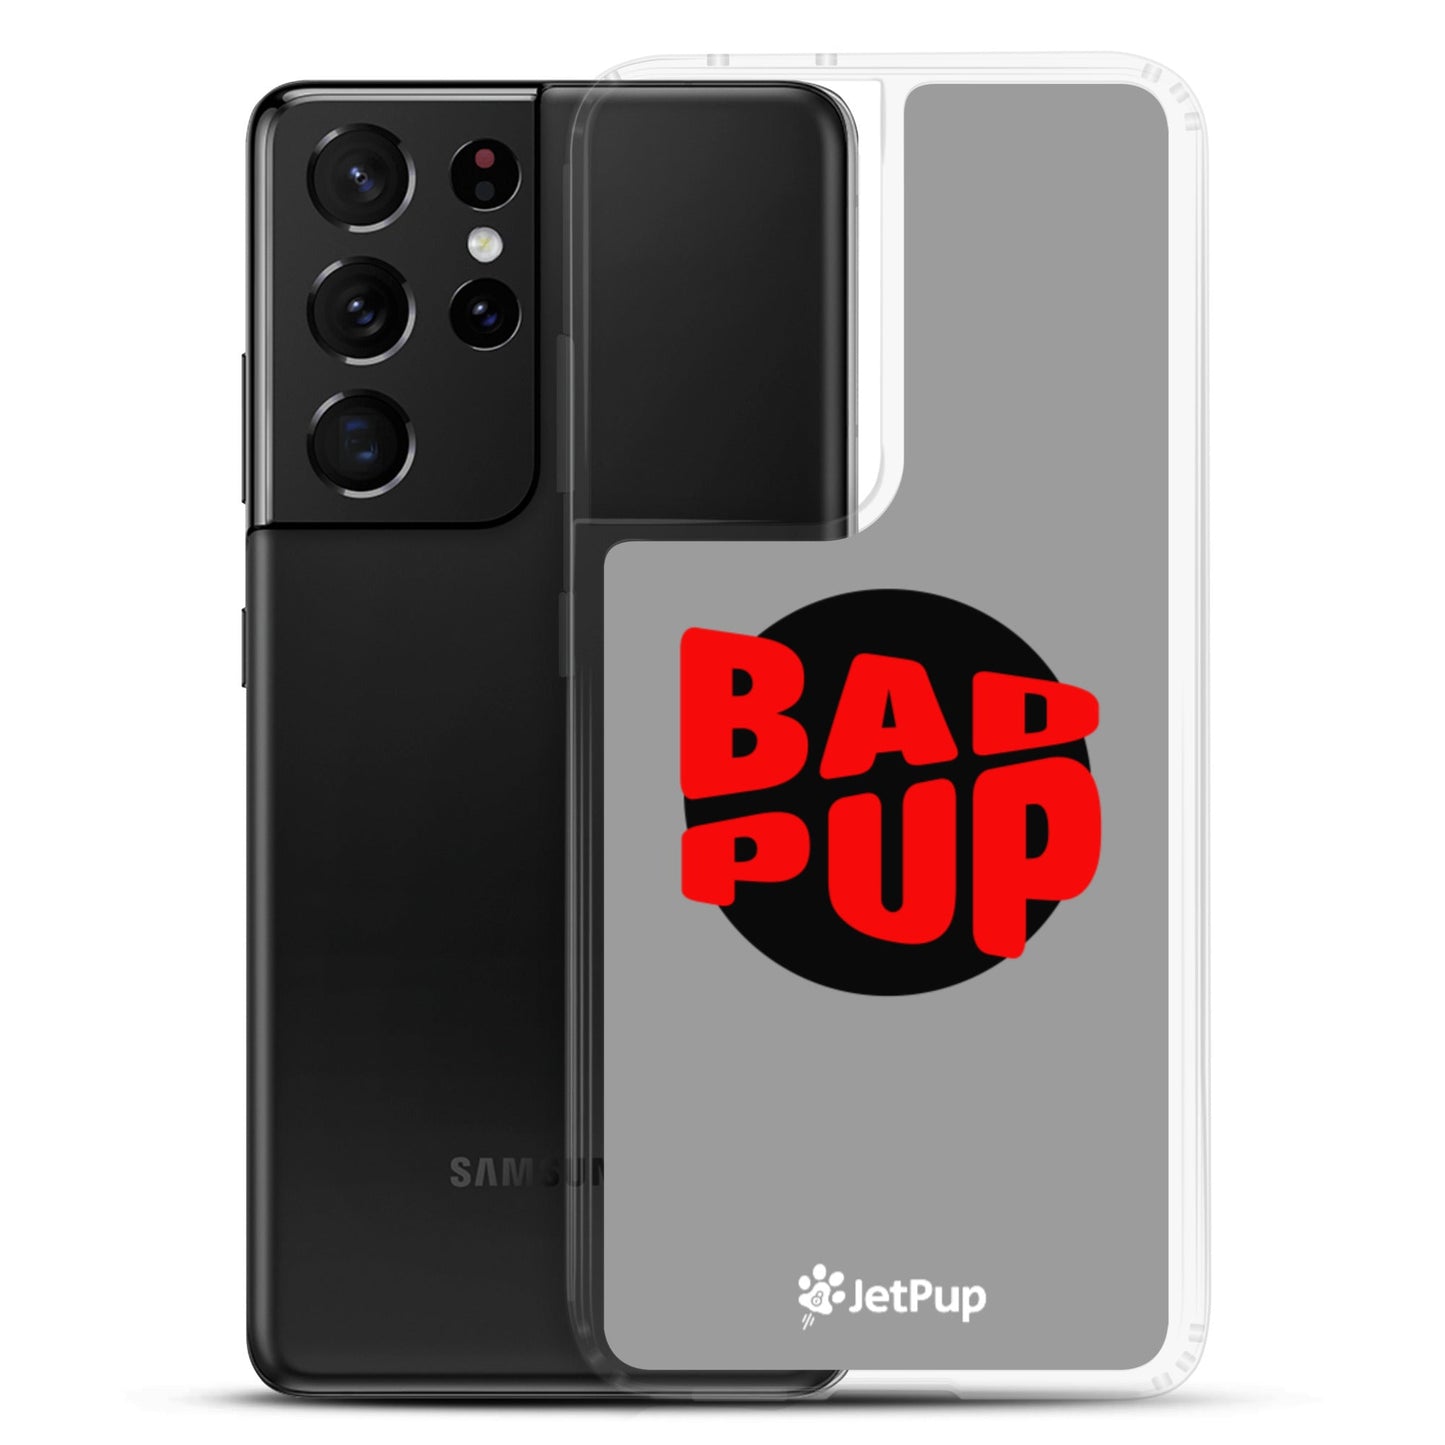 Bad Pup Samsung Case - Grey - JetPup